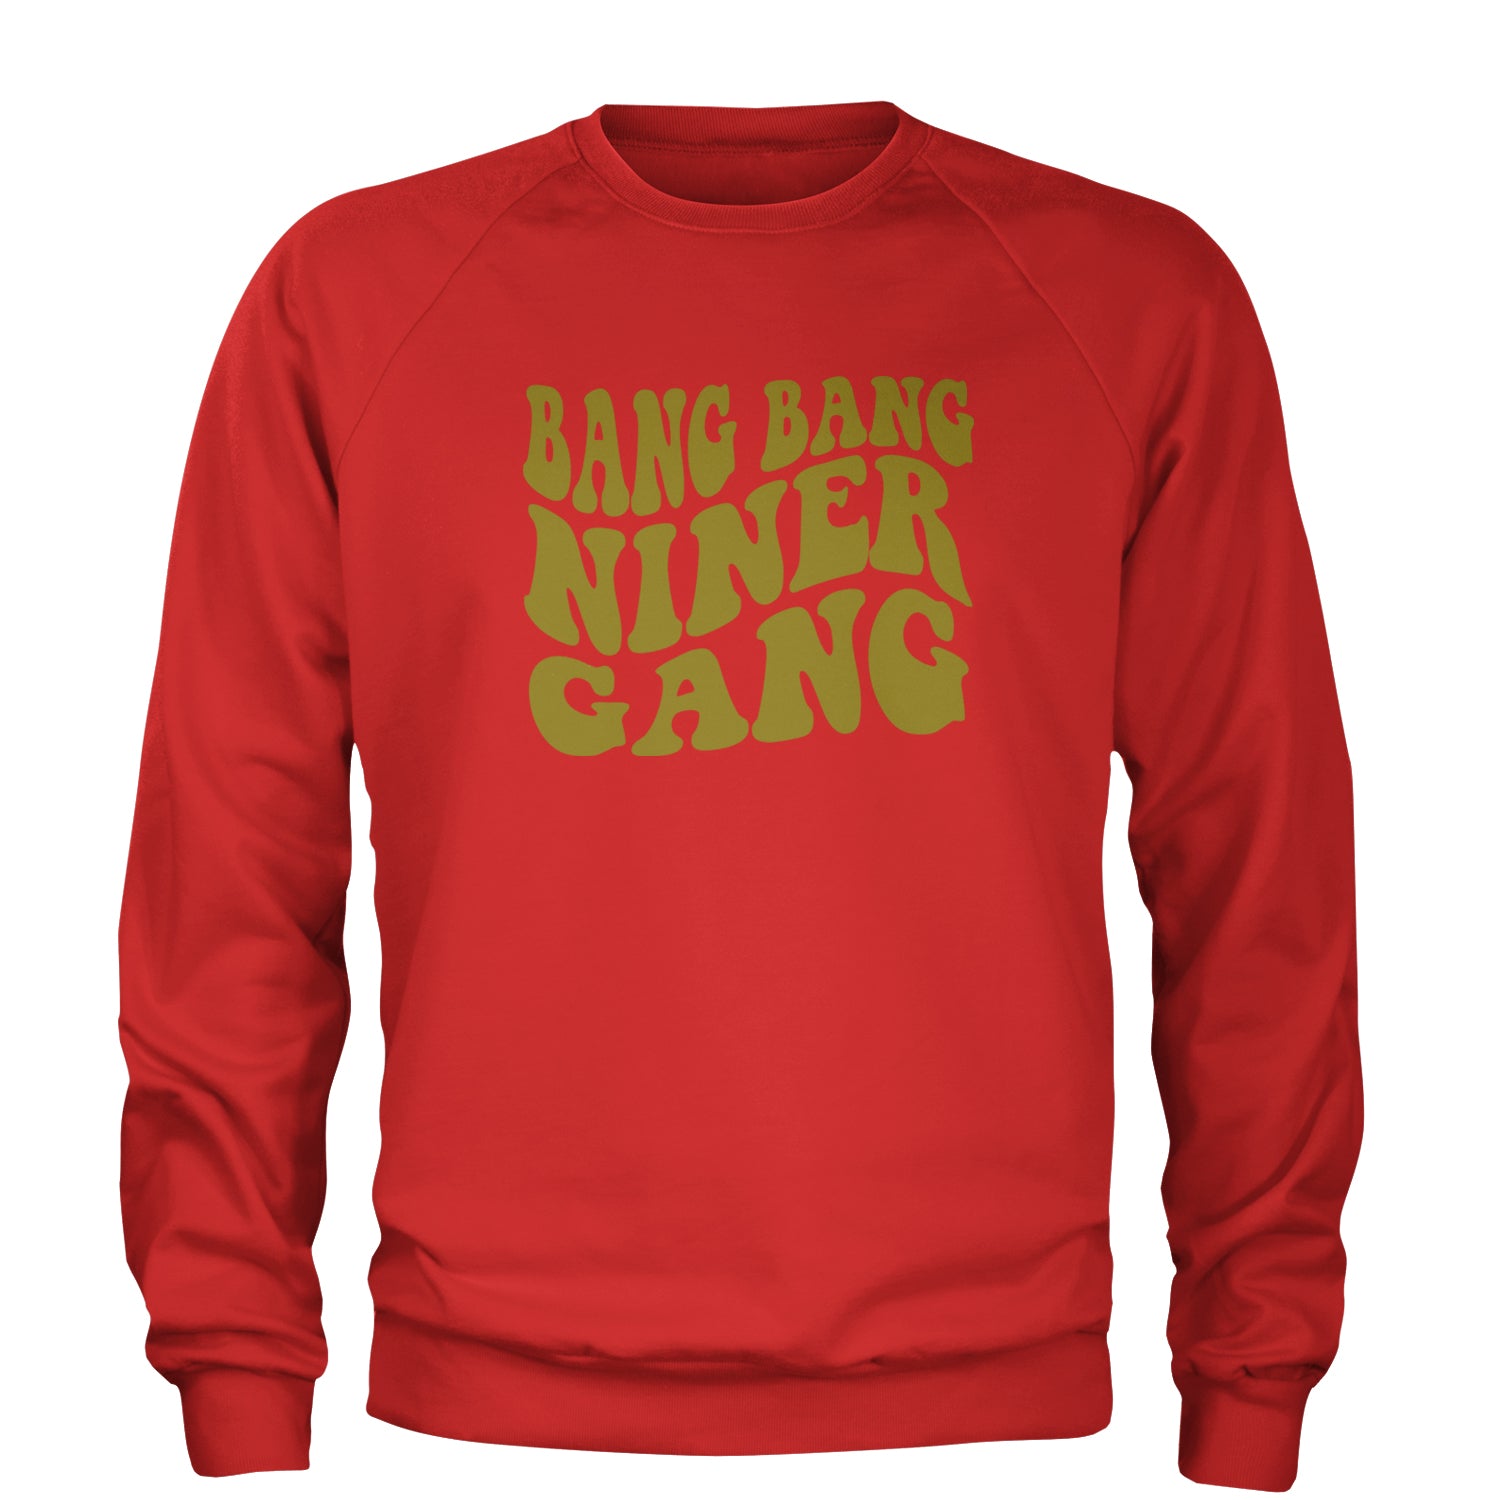 WAVE Bang Bang Niner Gang San Francisco Adult Crewneck Sweatshirt